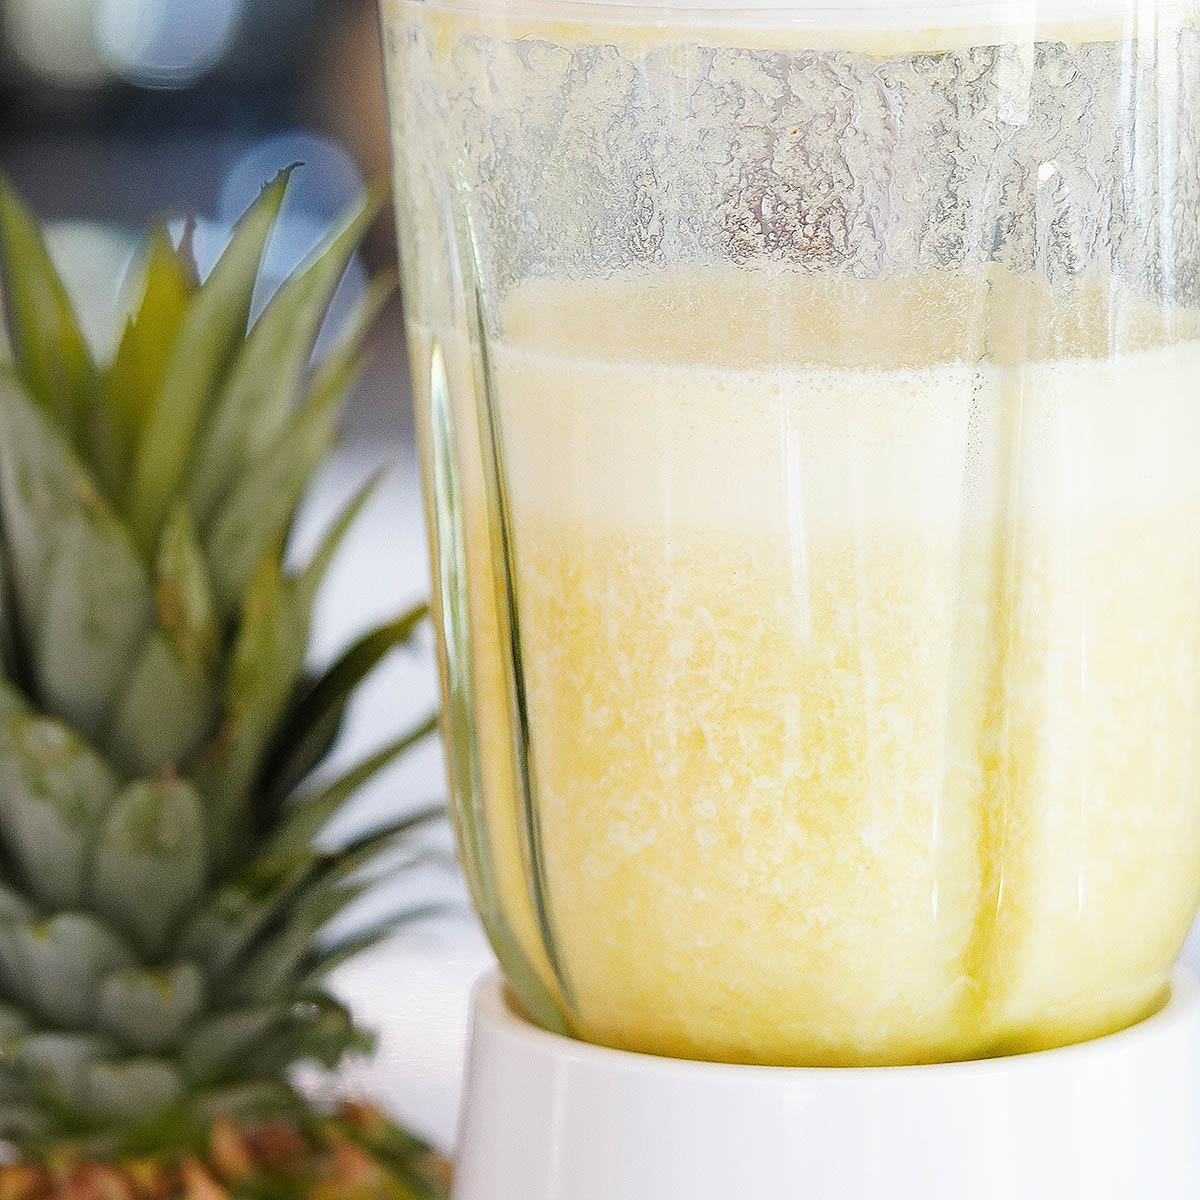 Pineapple water blended inside a blender's glass.